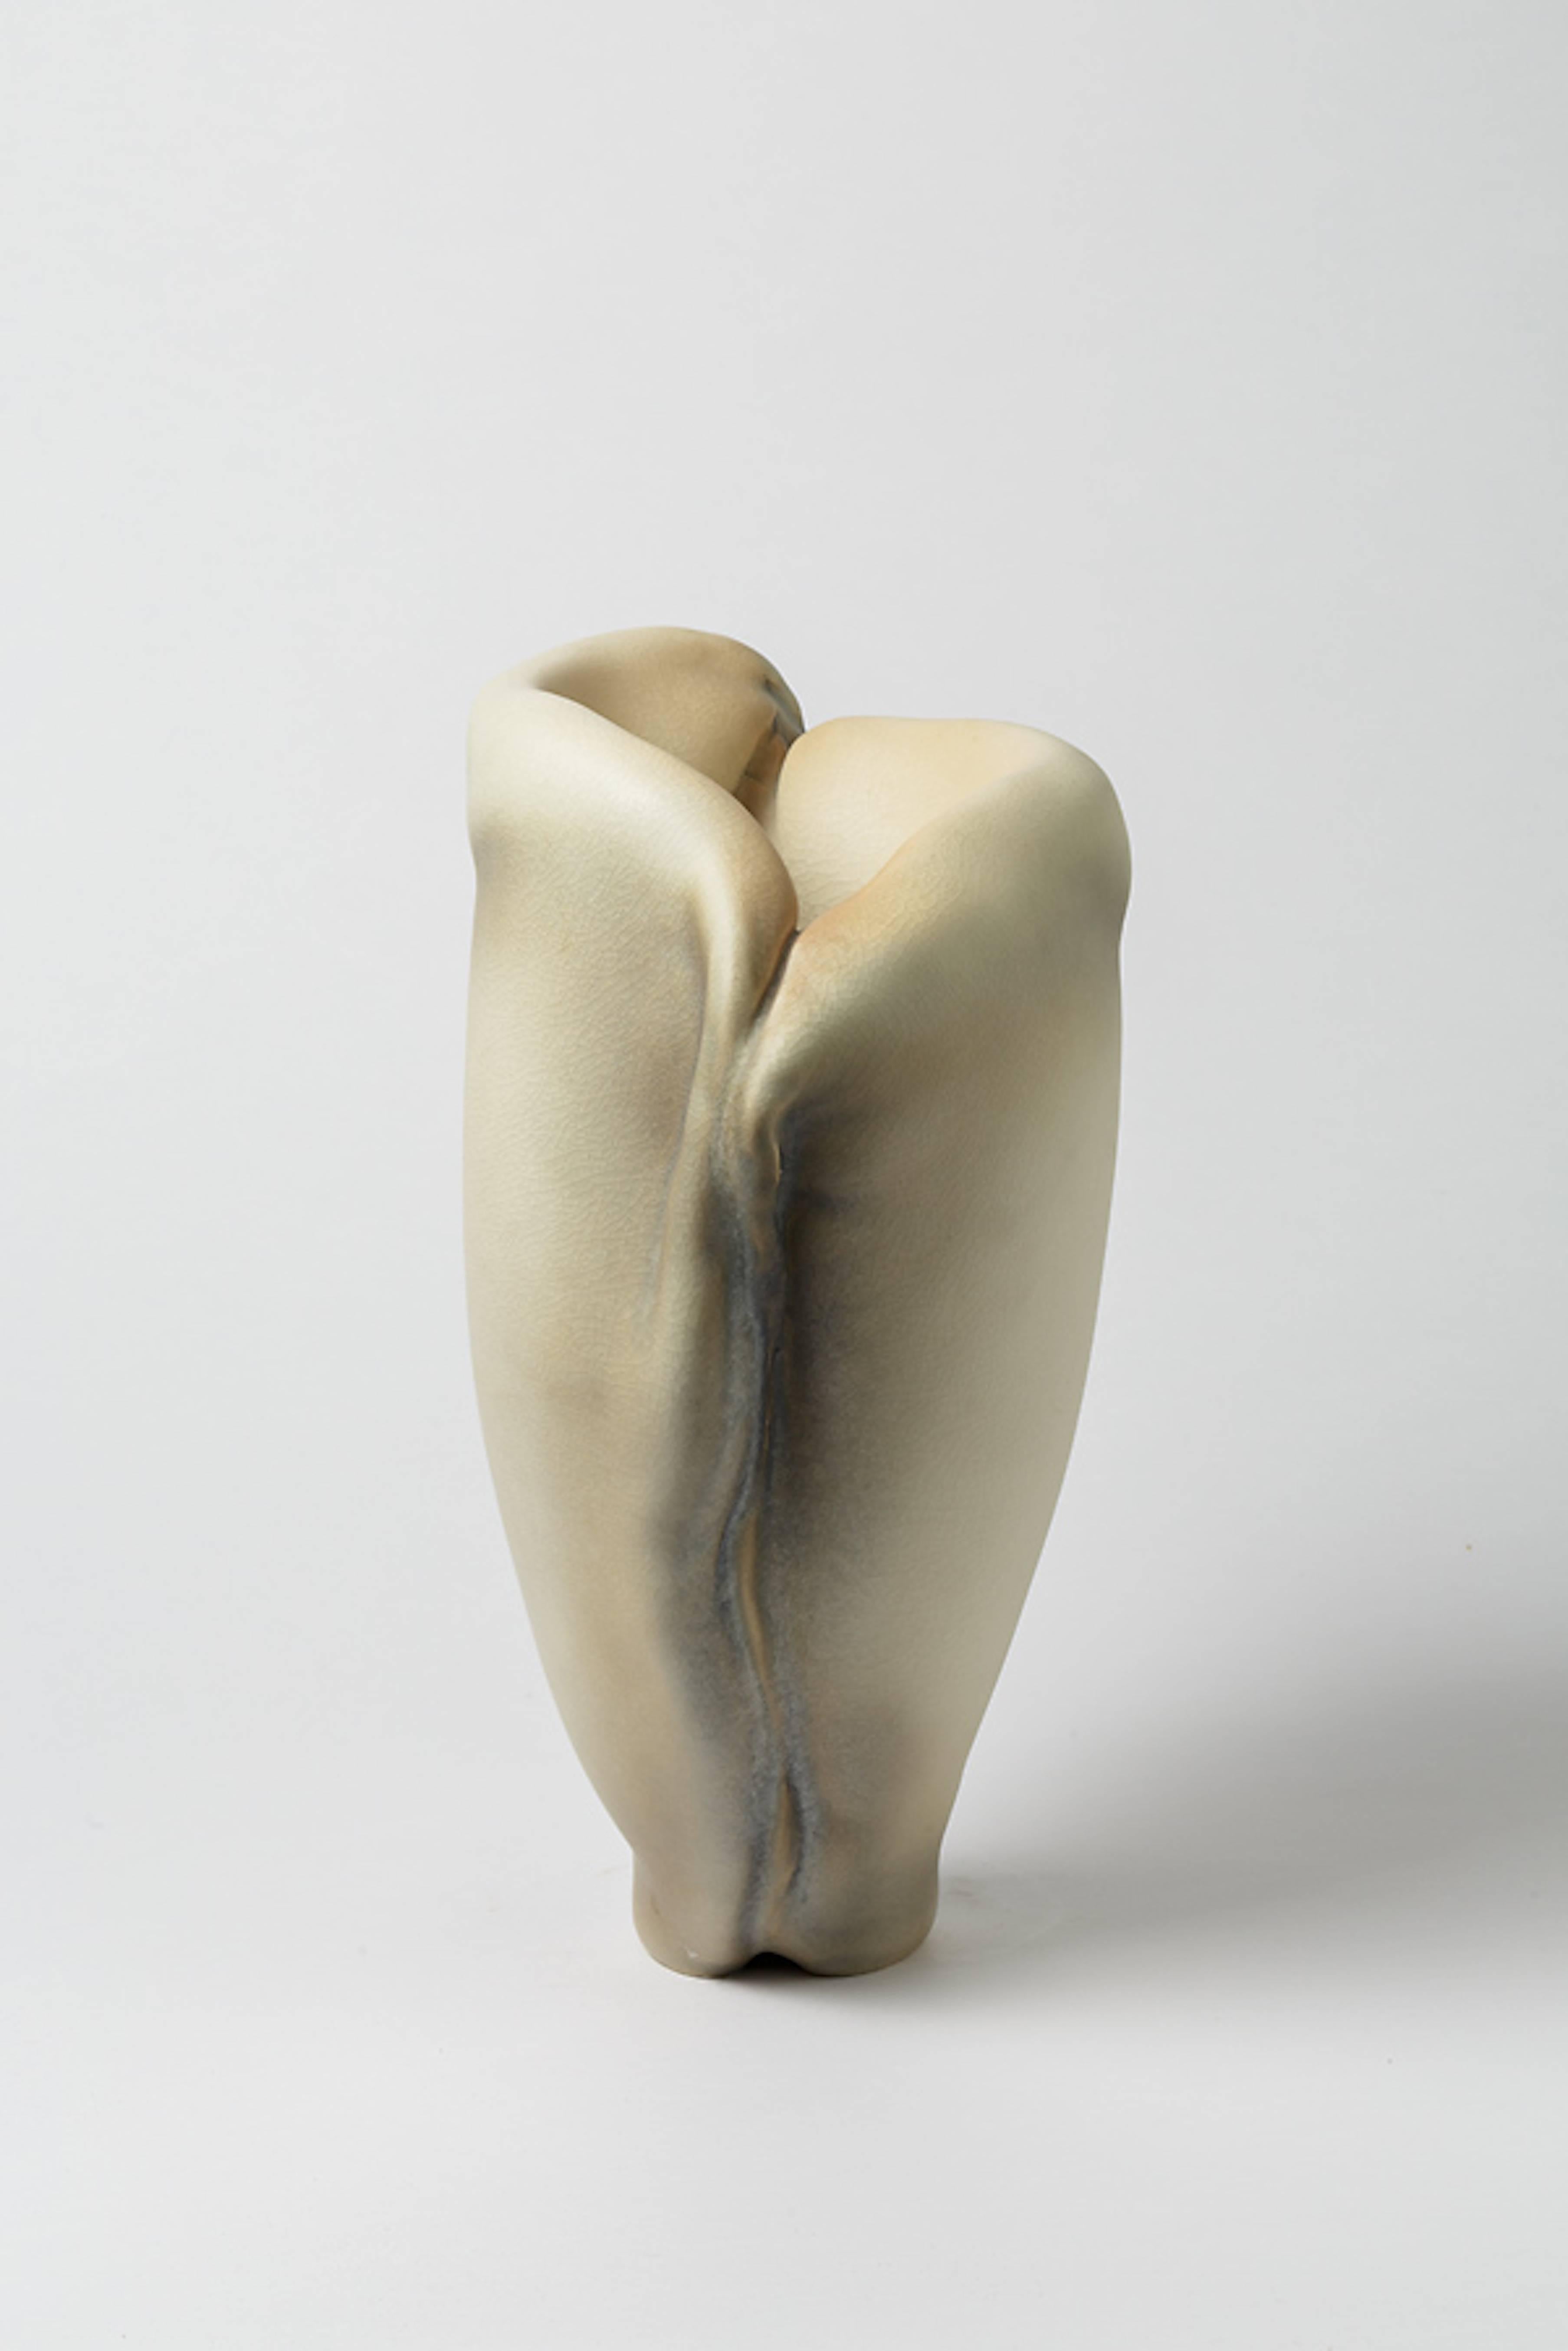 Porcelain Sculpture by Wayne Fischer, French-American, circa 2016 (Französisch)